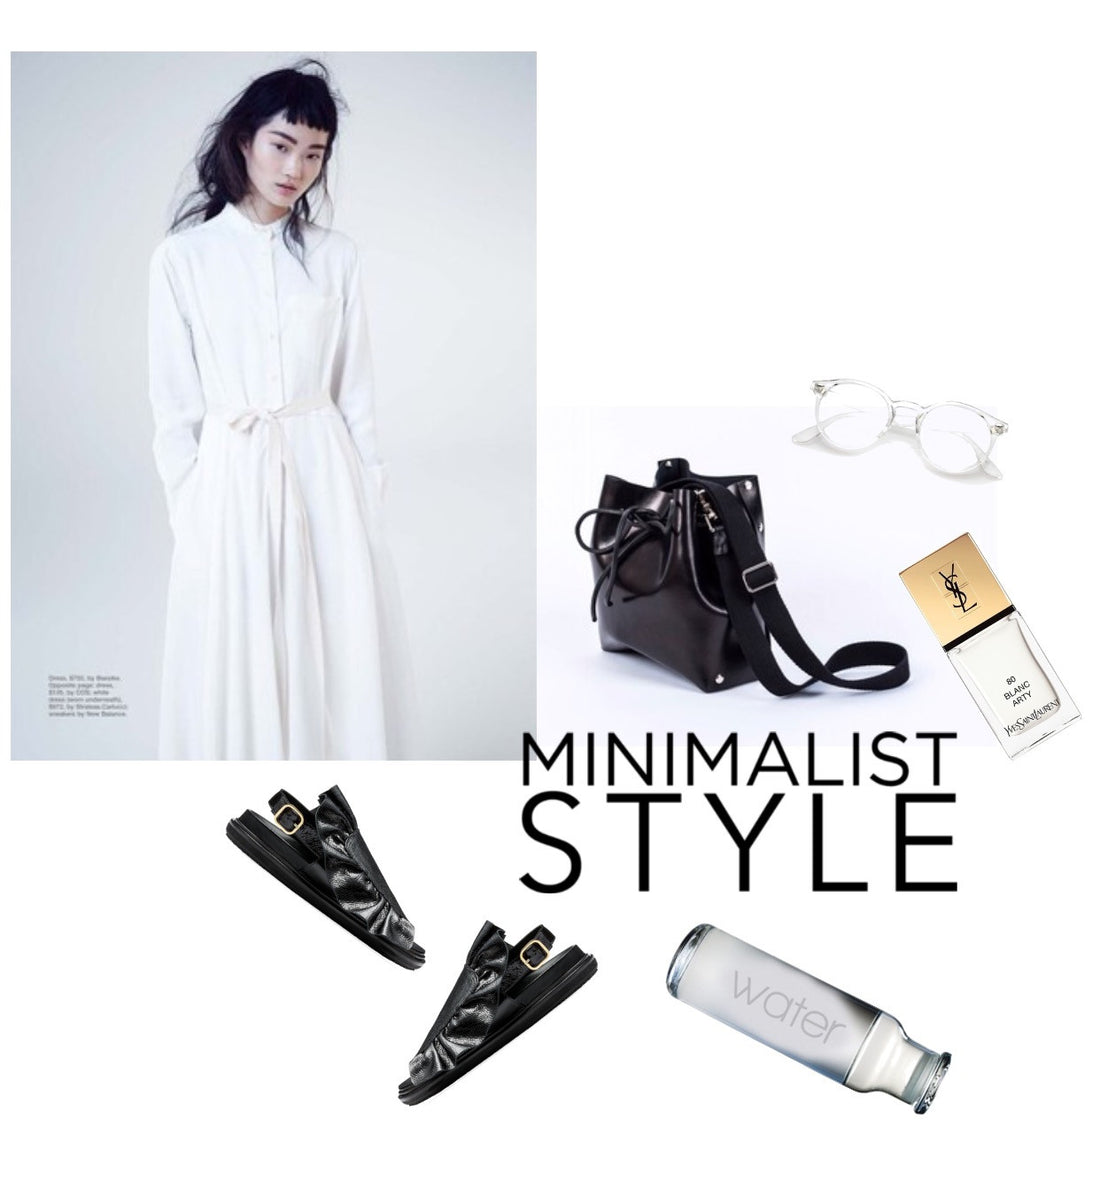 Minimalist style